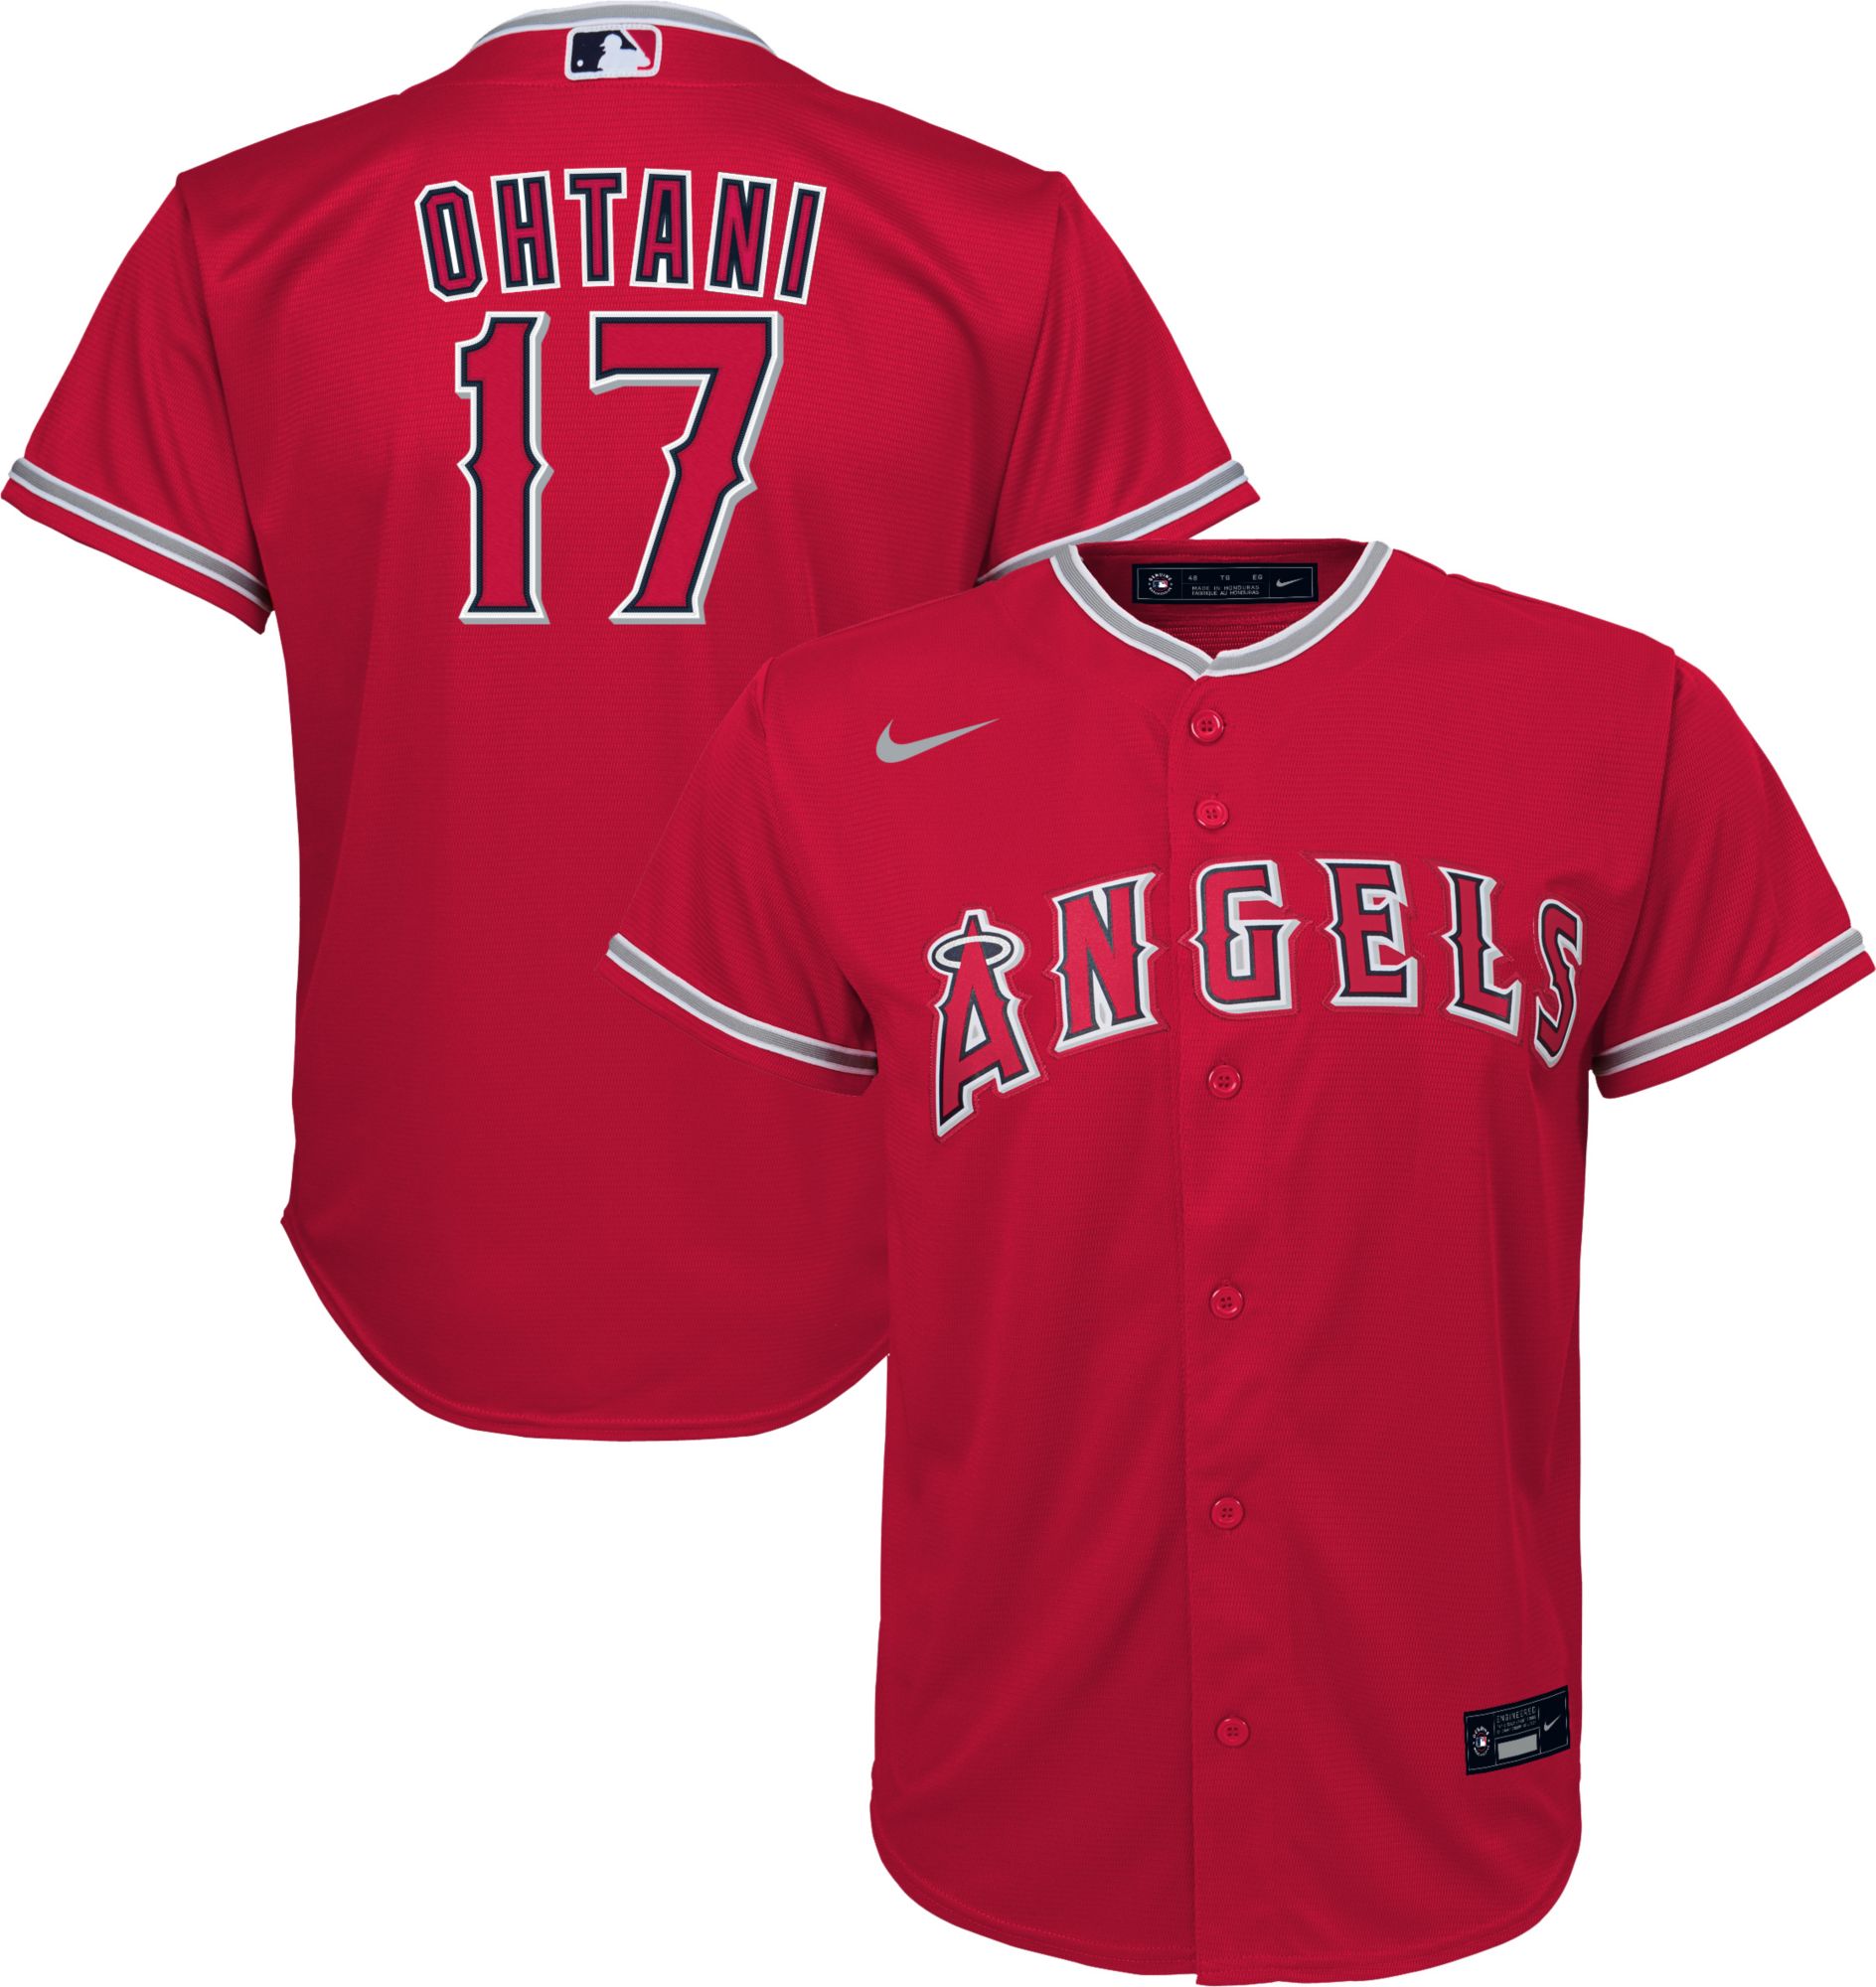 angel baseball jersey